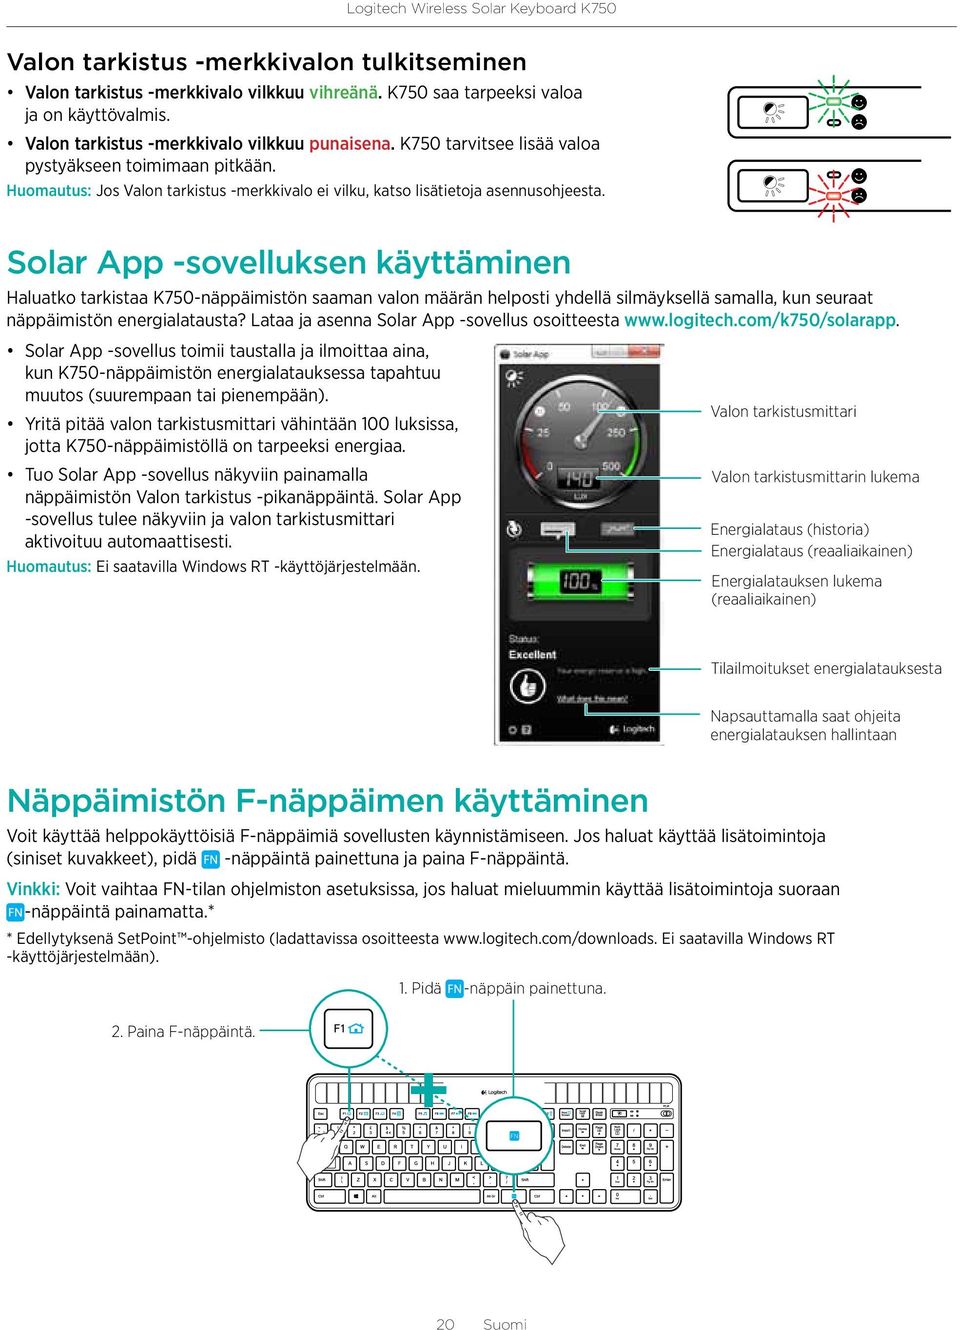 Solar App -sovelluksen käyttäminen Haluatko tarkistaa K750-näppäimistön saaman valon määrän helposti yhdellä silmäyksellä samalla, kun seuraat näppäimistön energialatausta?